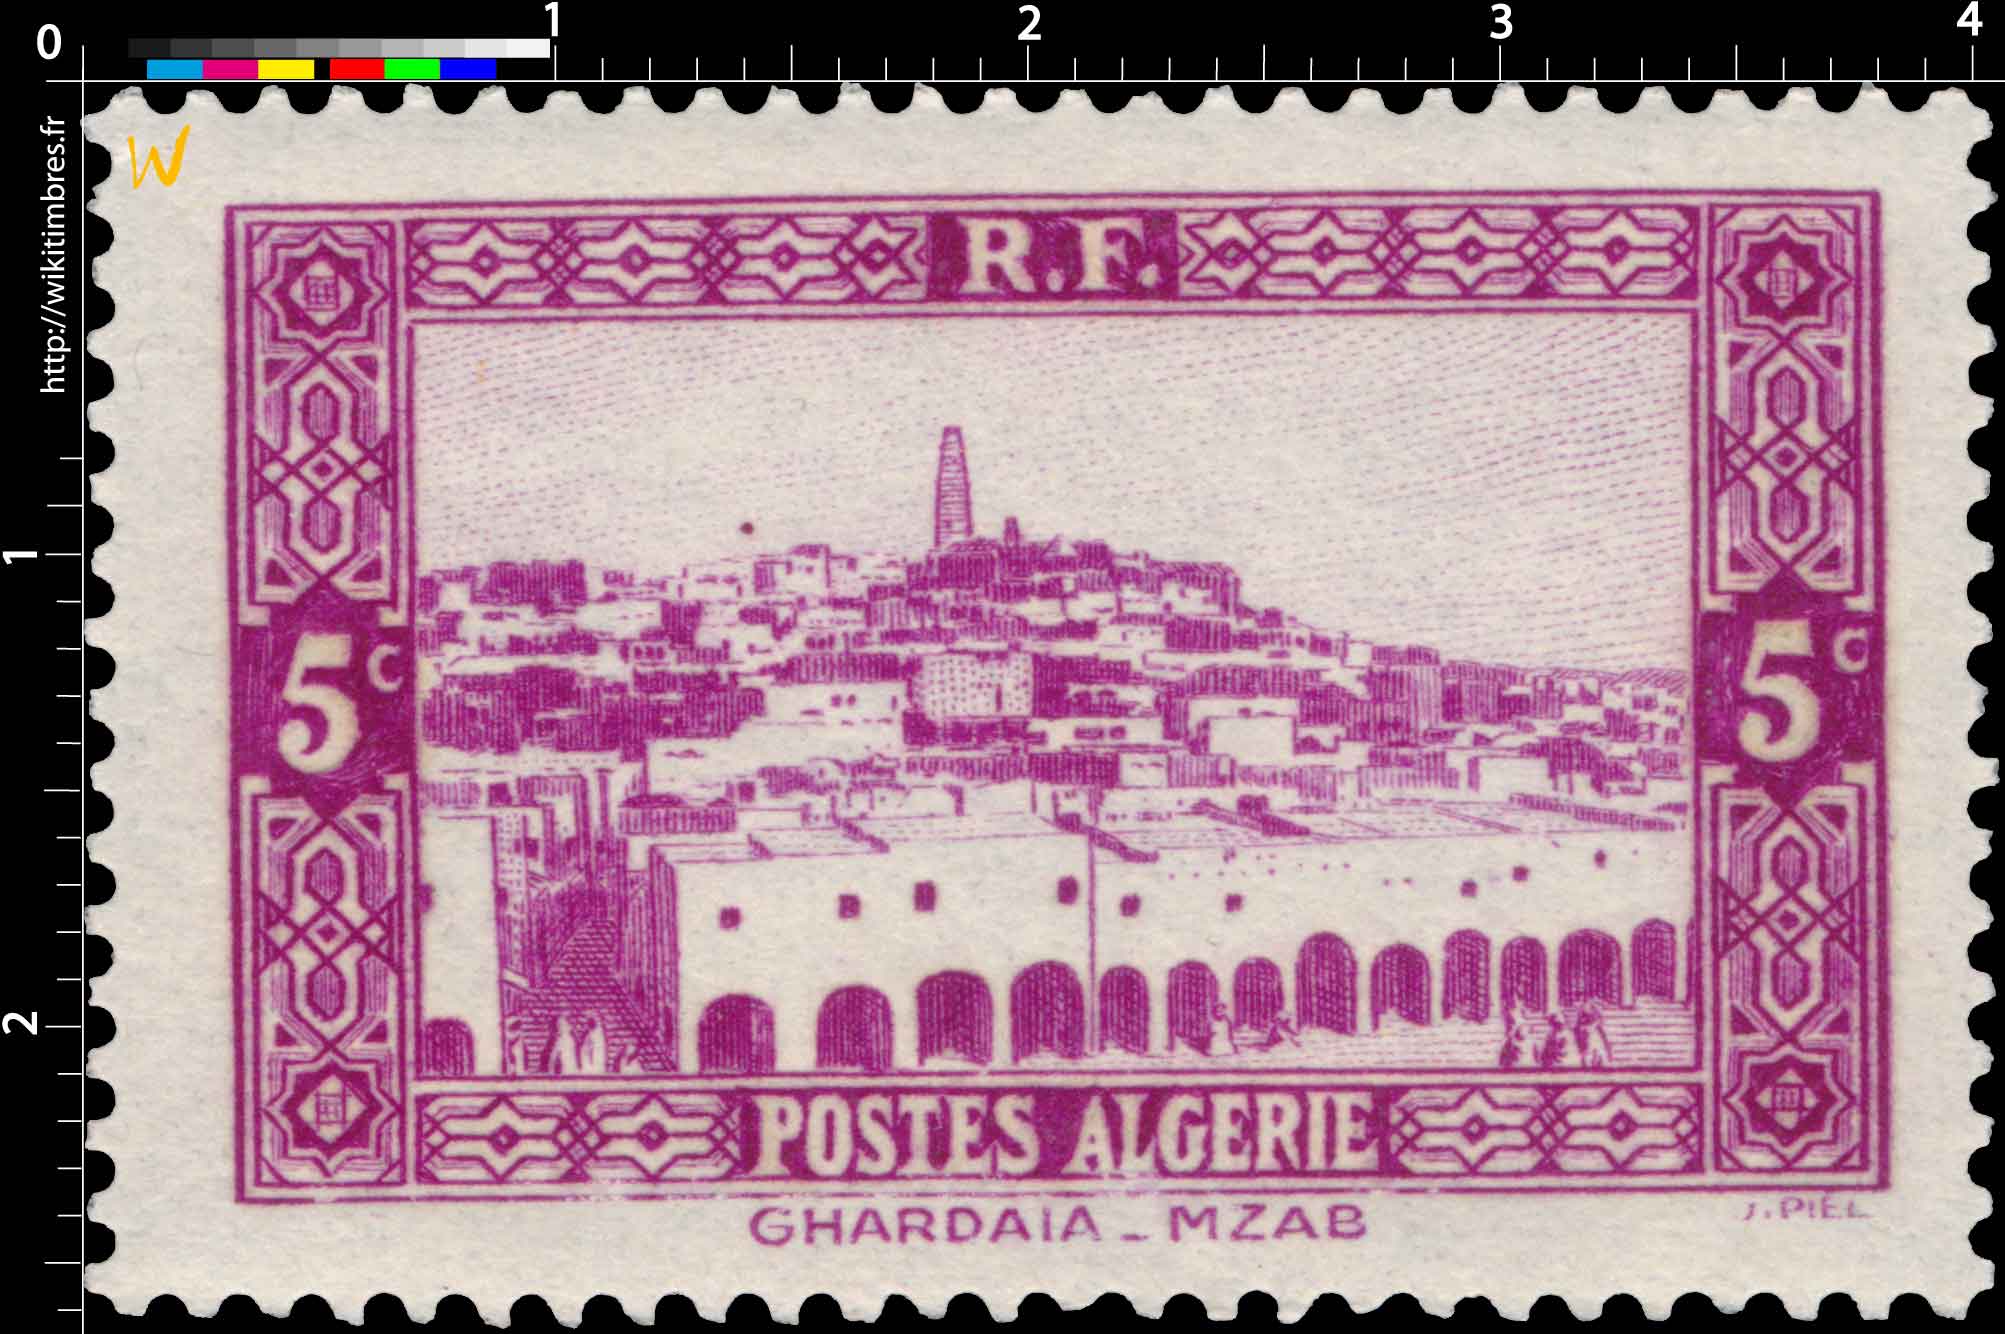 Algérie - Ghardaïa - MZAB